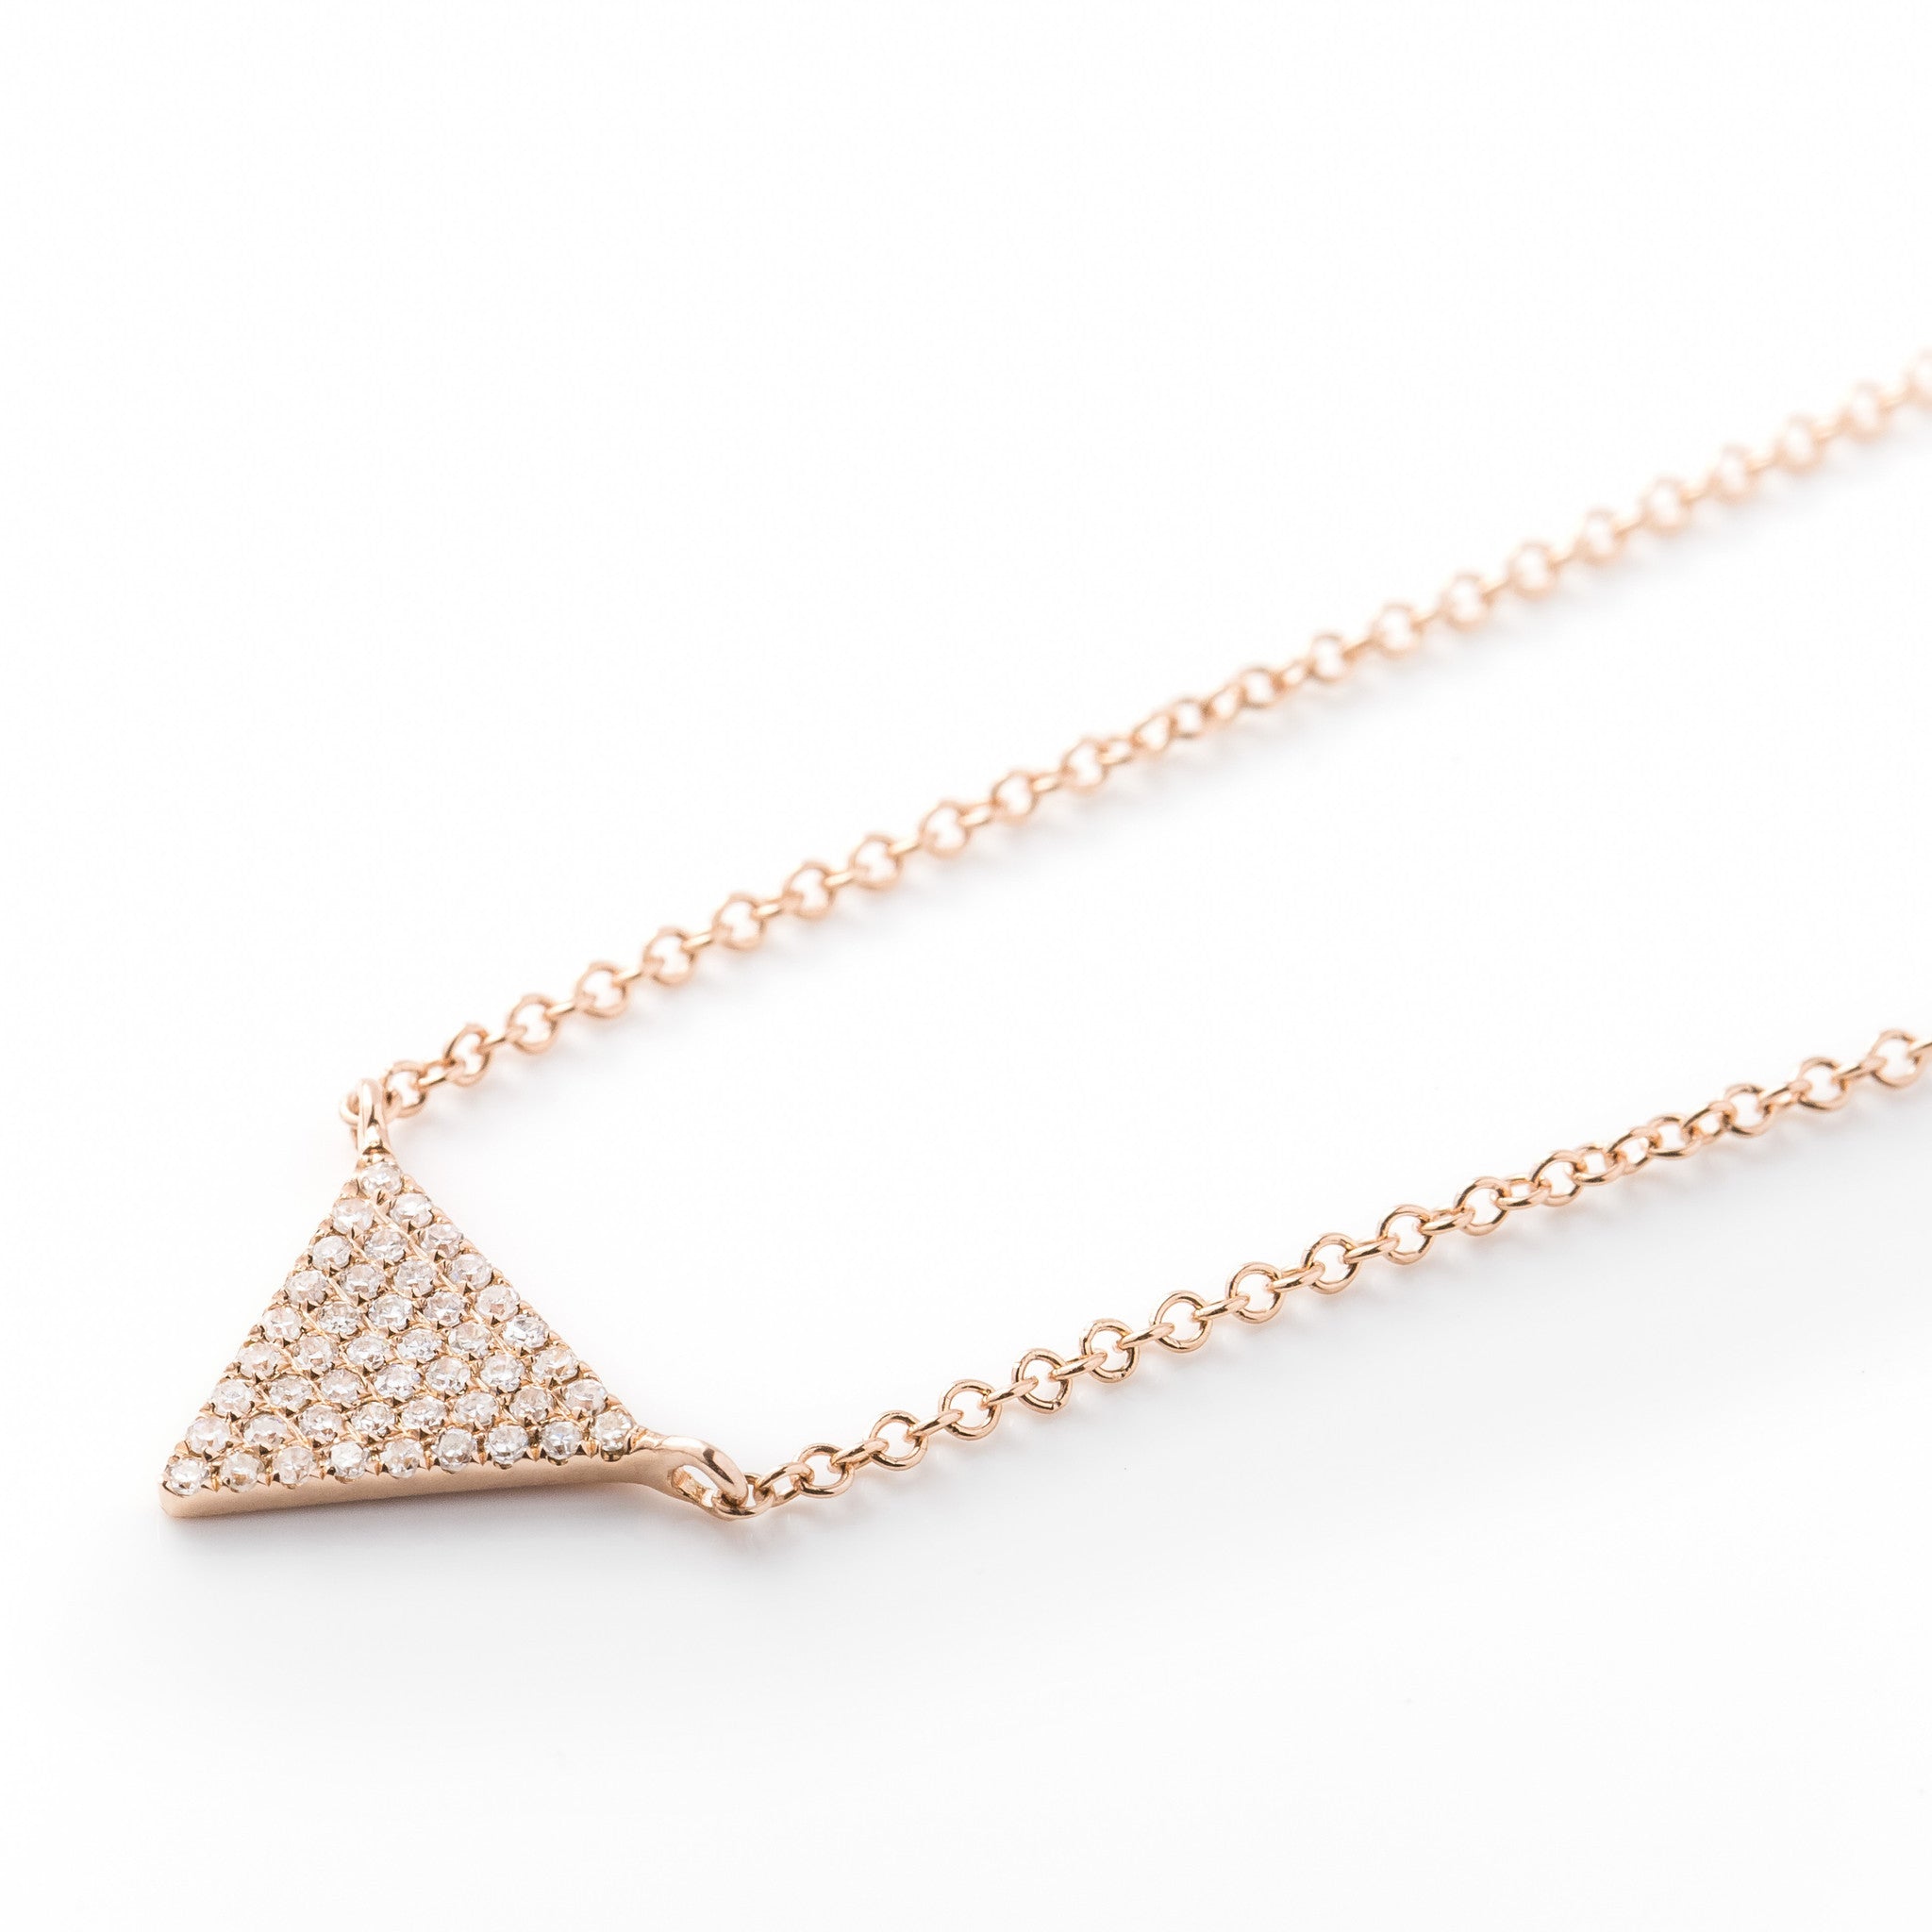 Triangle Diamond Necklace by Atheria Jewelry